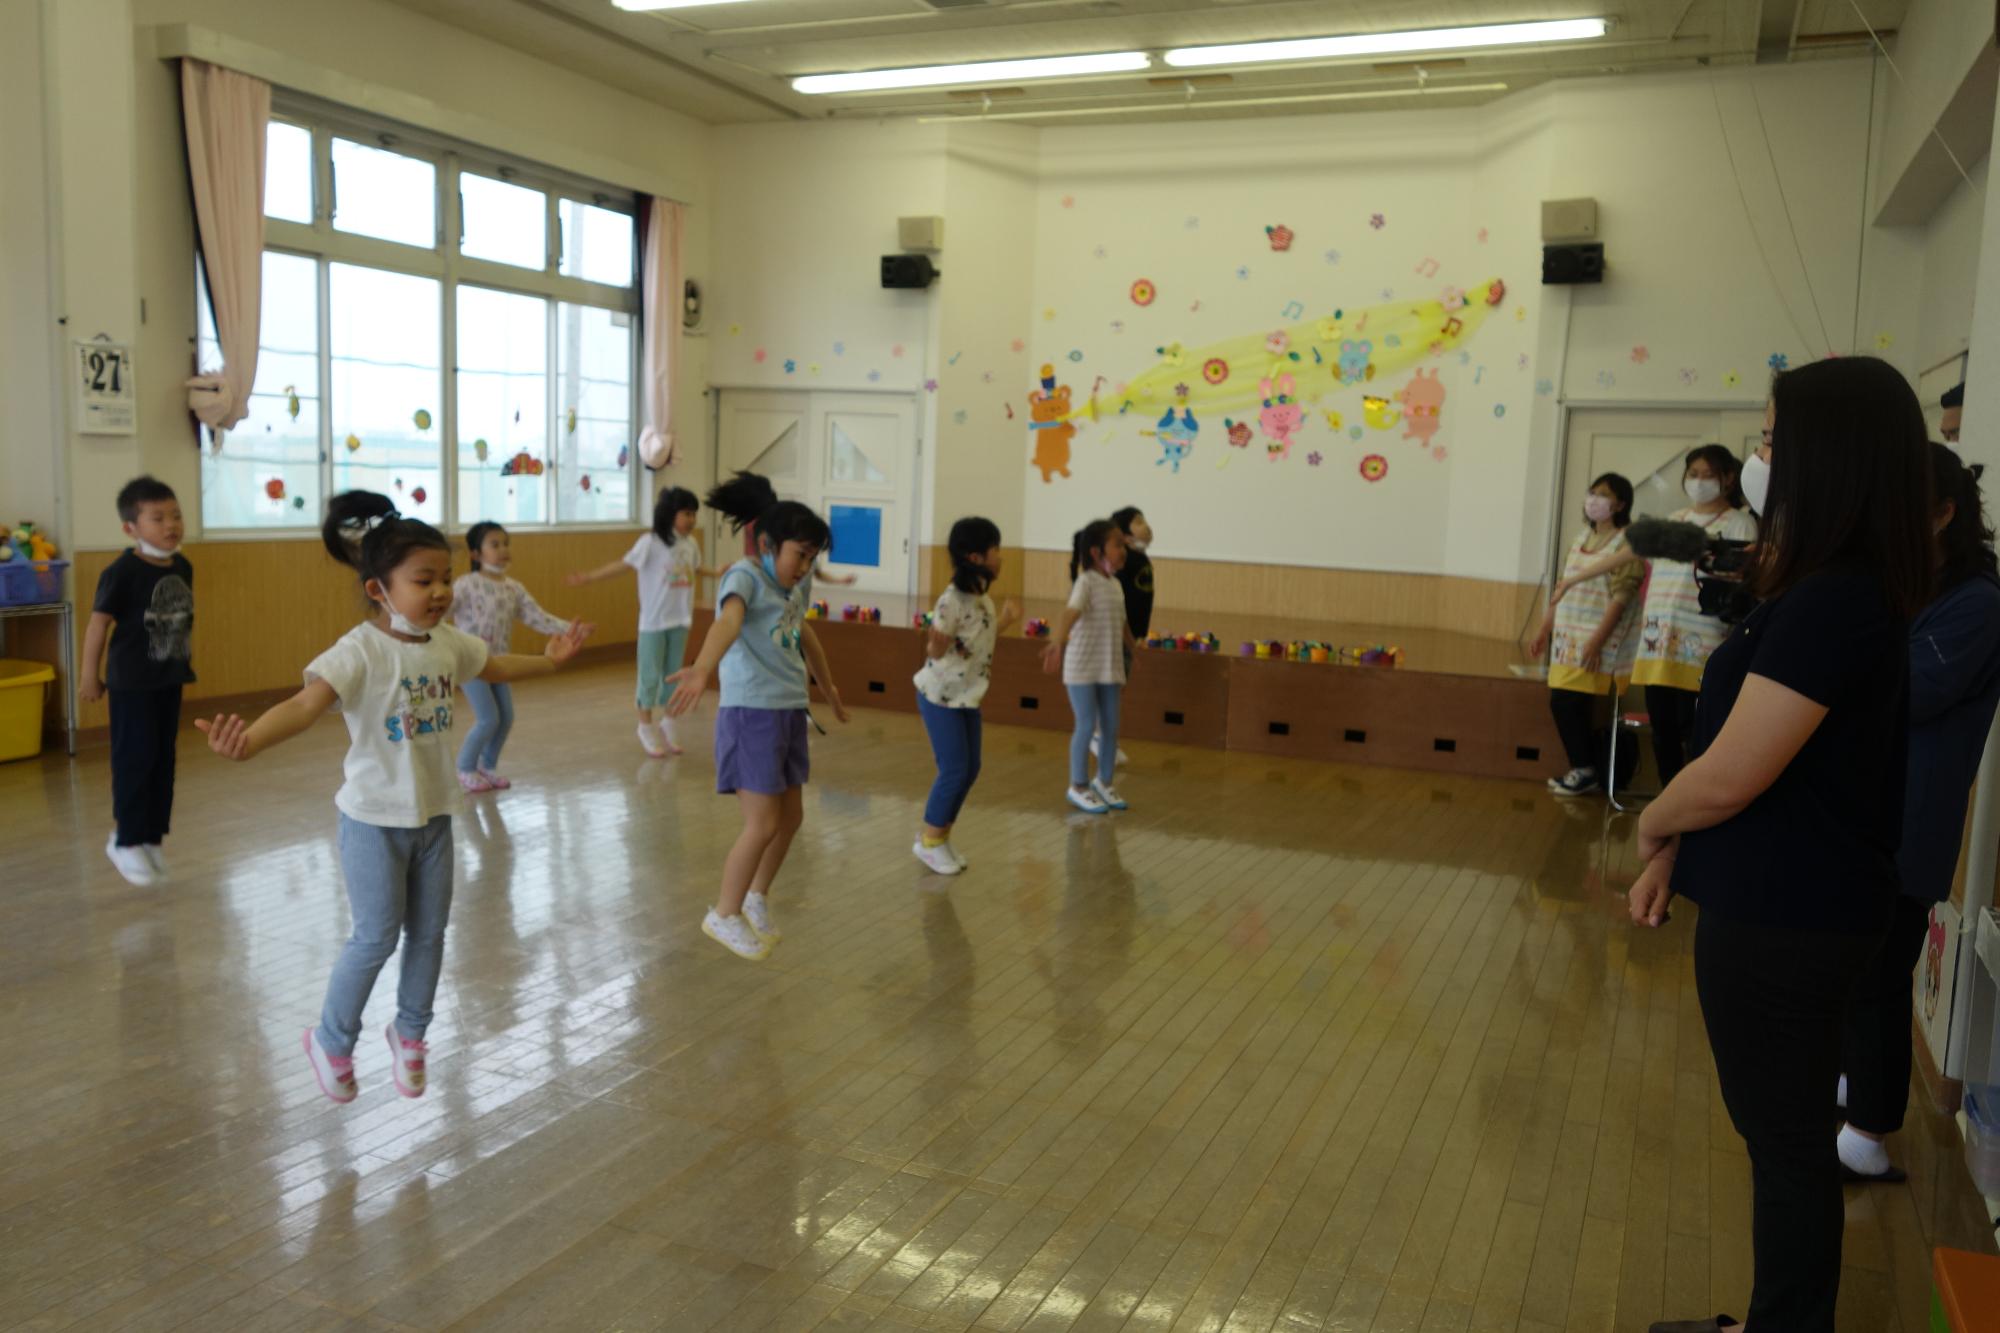 教室内を2列に並び間隔をあけて広がって踊っている園児たちを、先生たちやオリビアさんが見ている写真